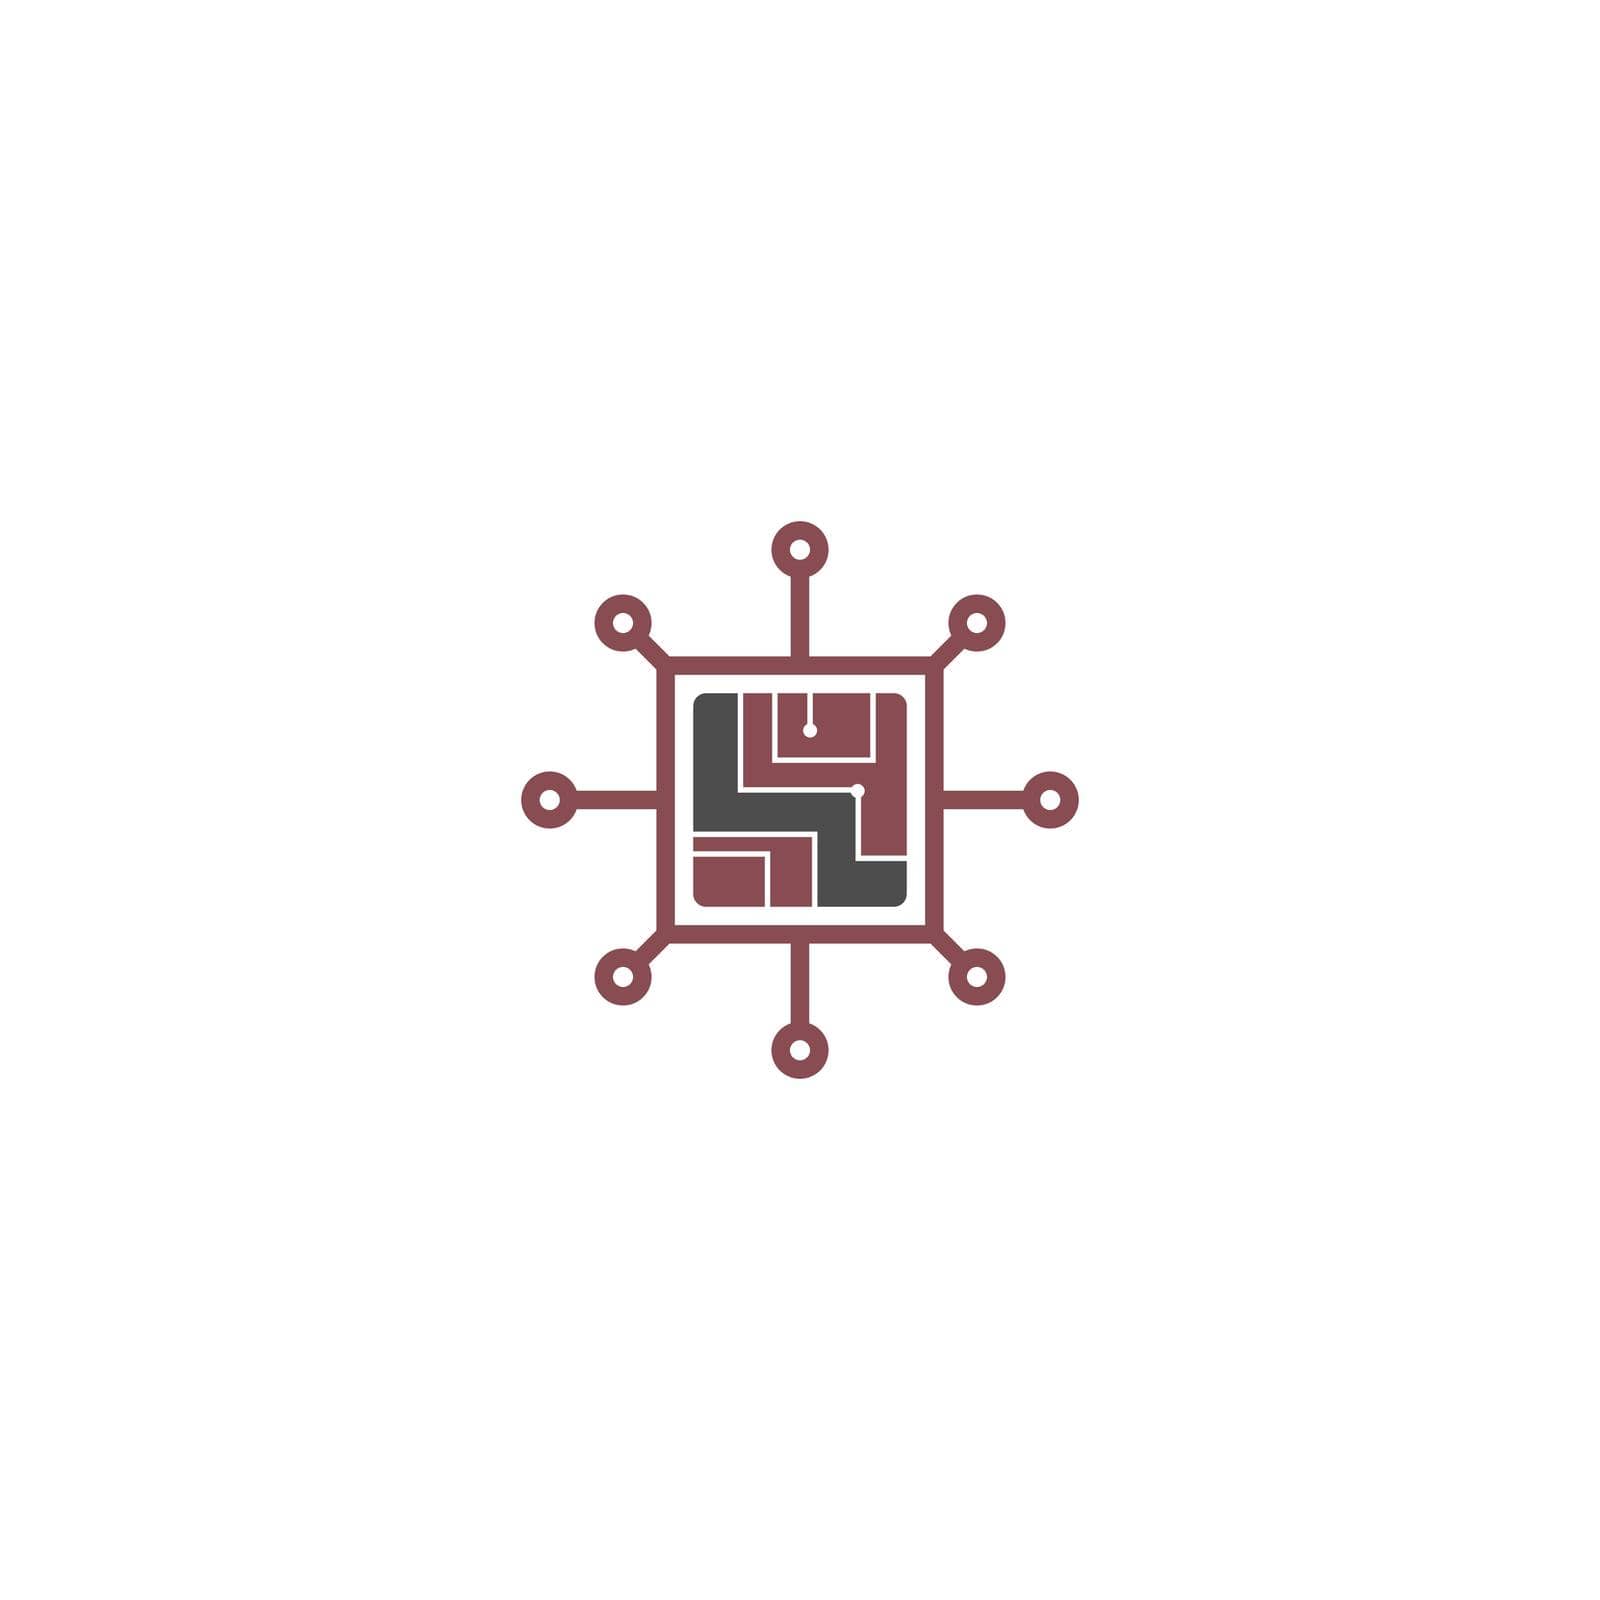 Circuit technology logo icon design vector template